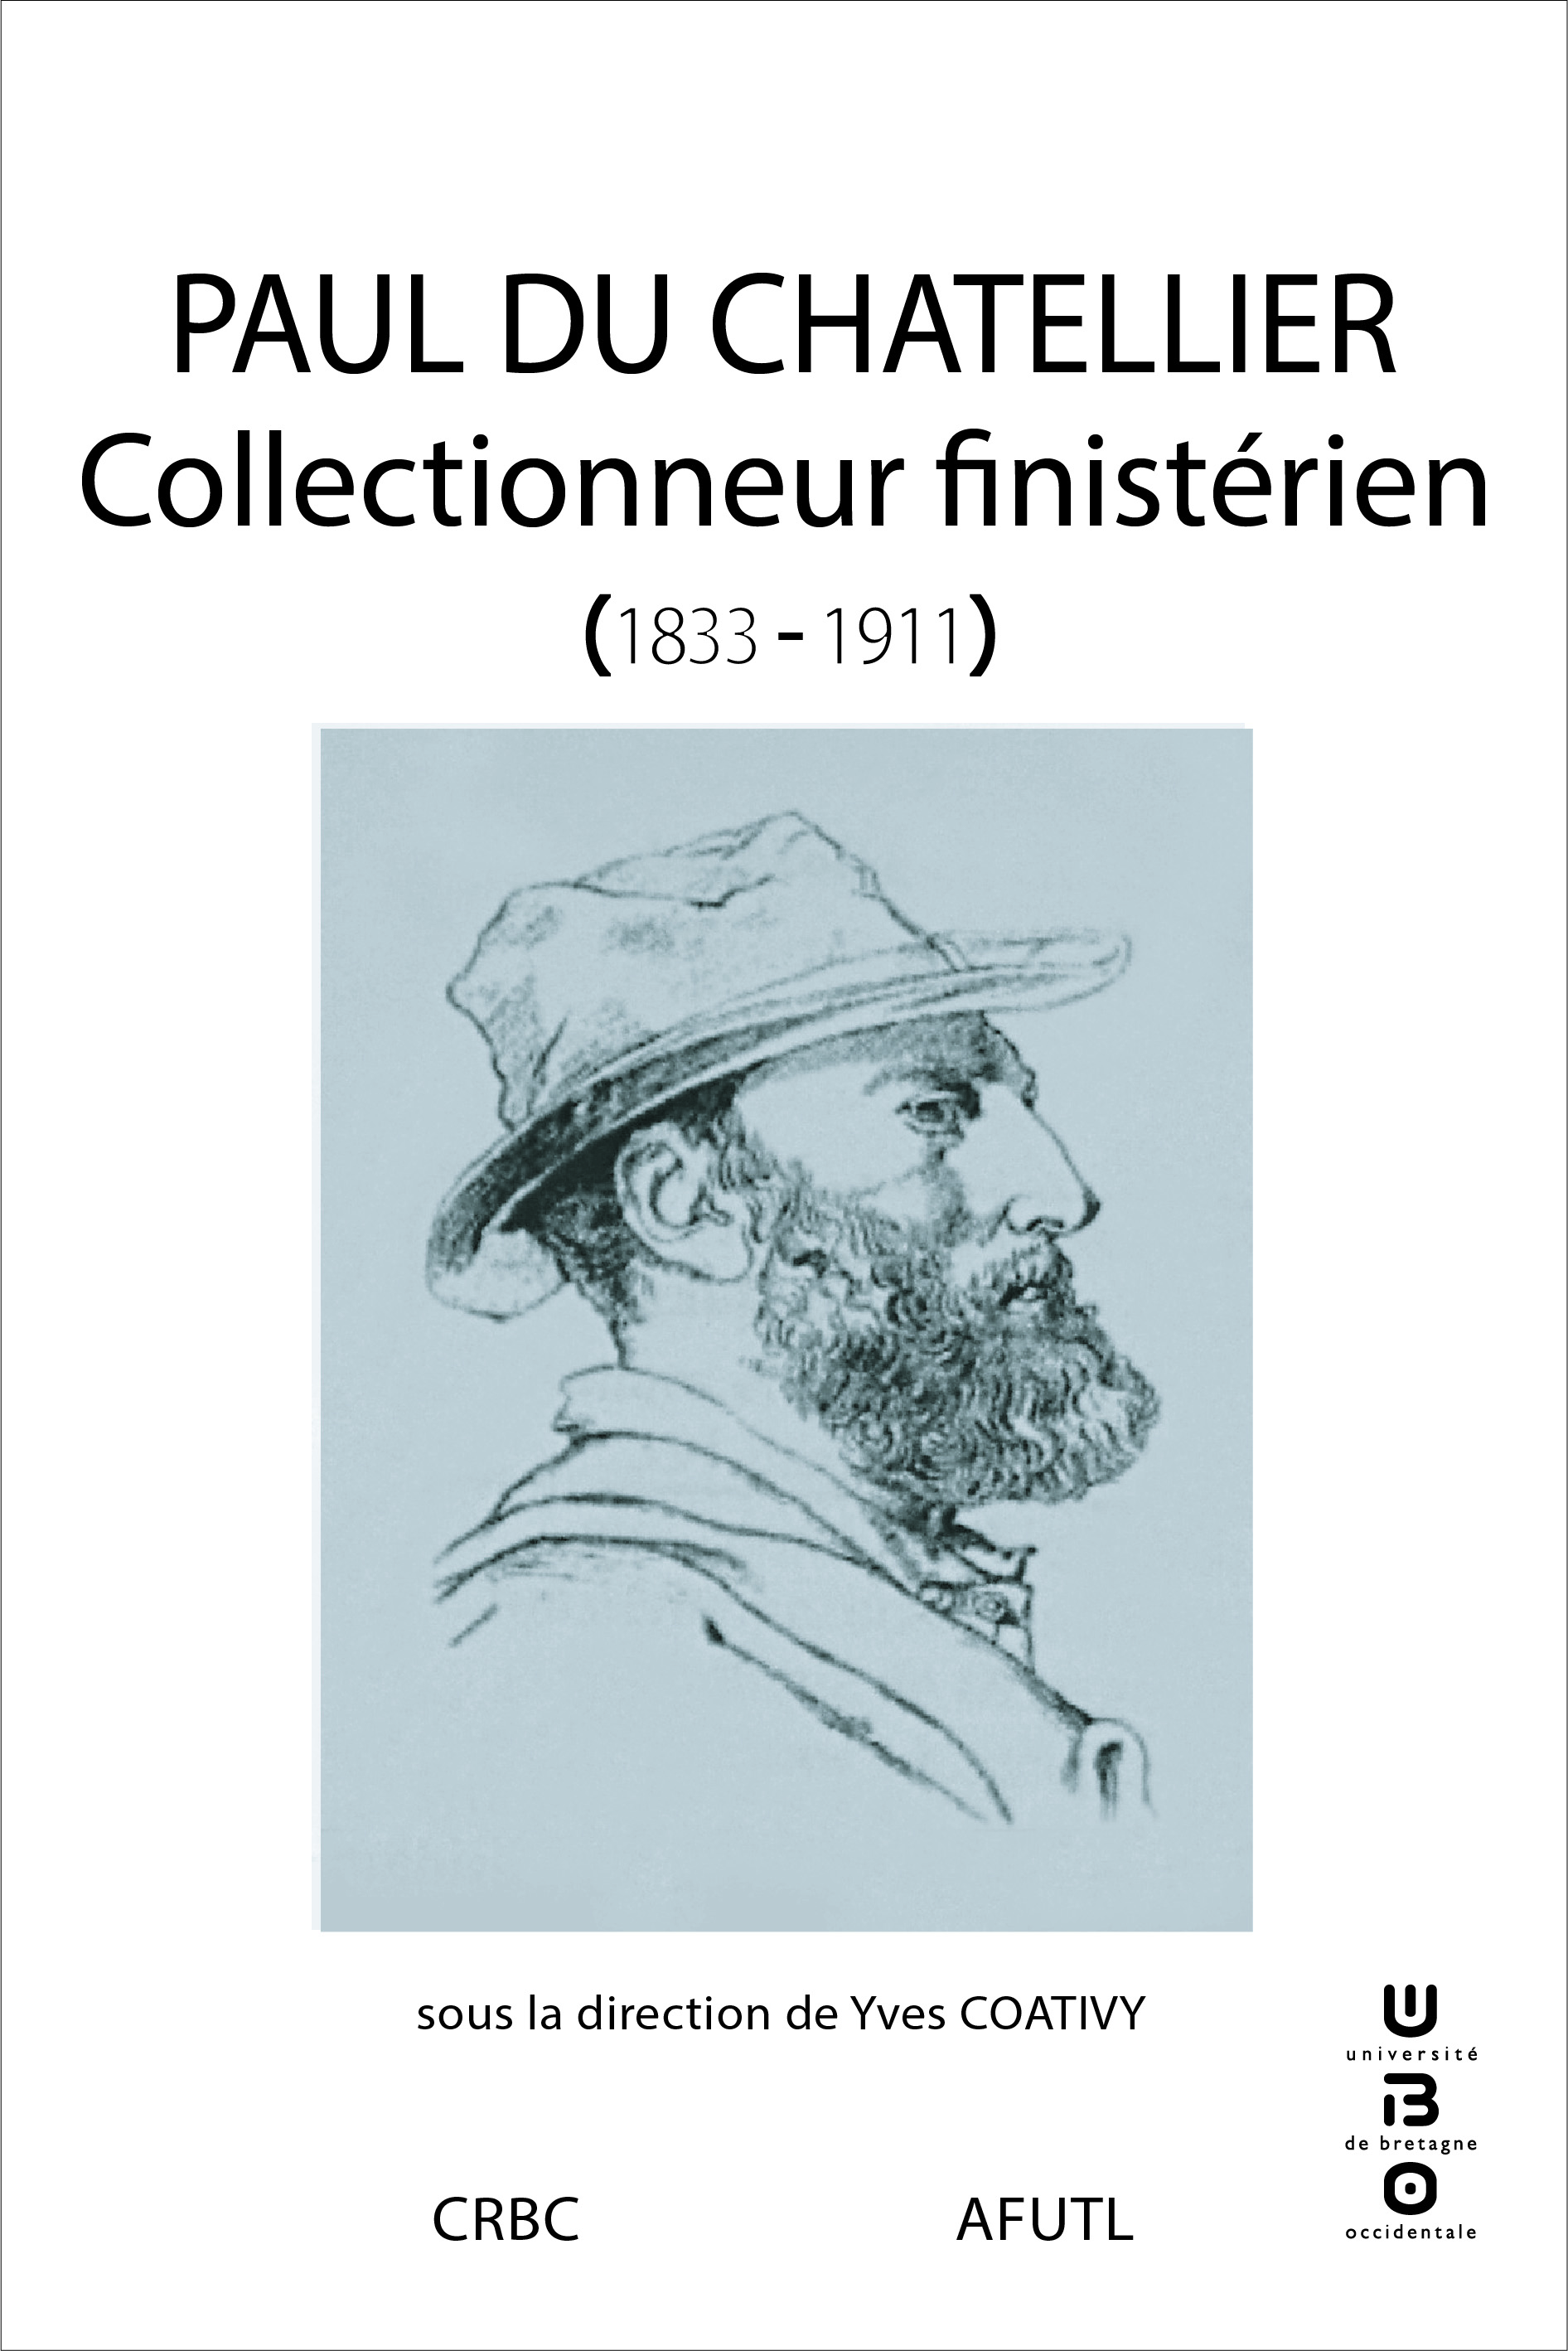 Paul Du Chatellier, collectionneur finistérien